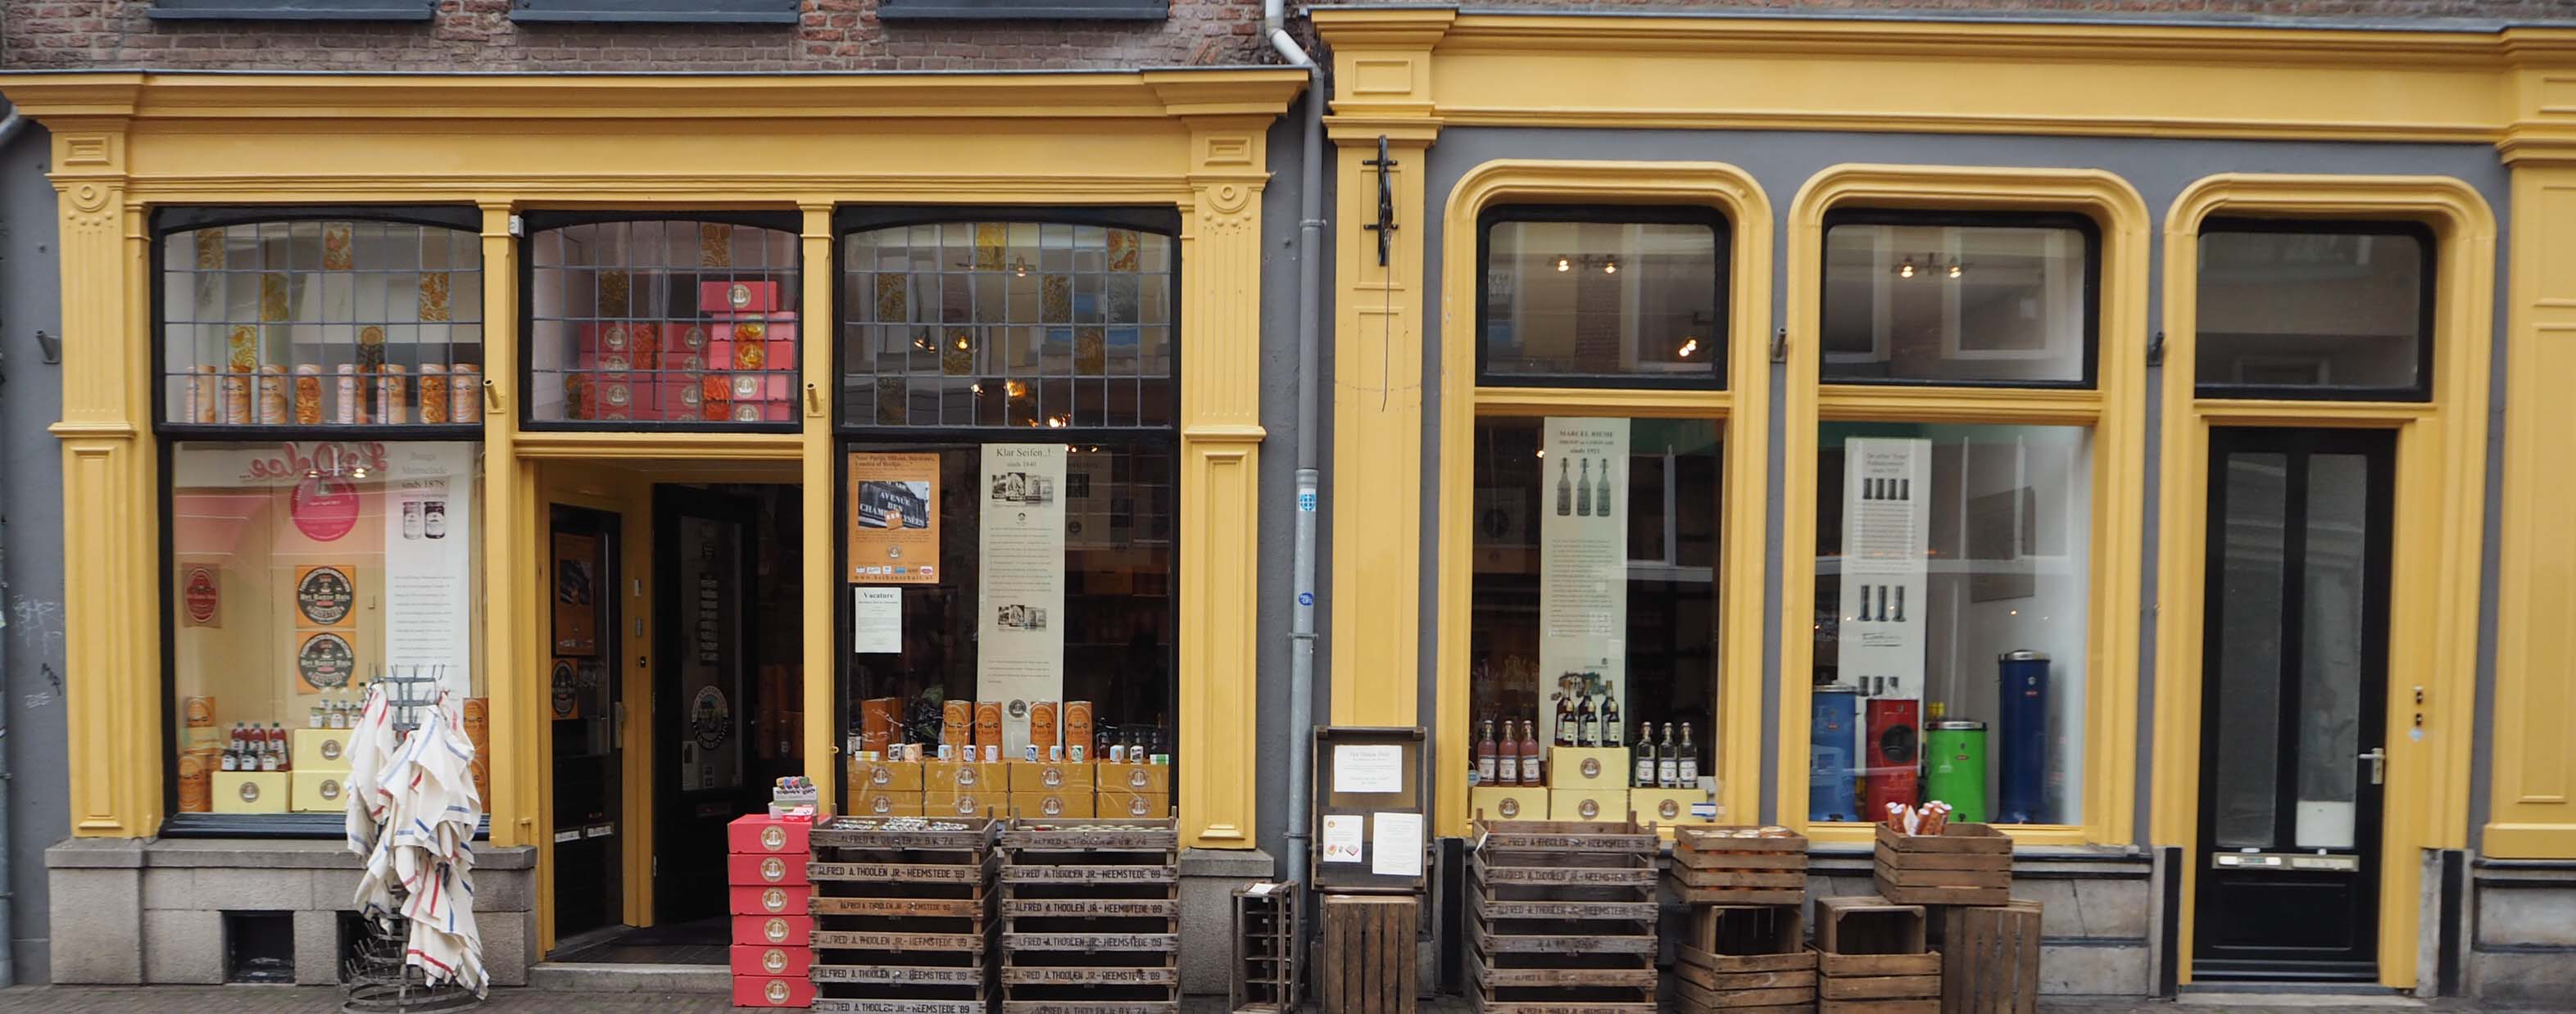 Het Hanze Huis in Zwolle biedt een uitgebreid assortiment aan authentieke levensmiddelen en cadeau-artikelen